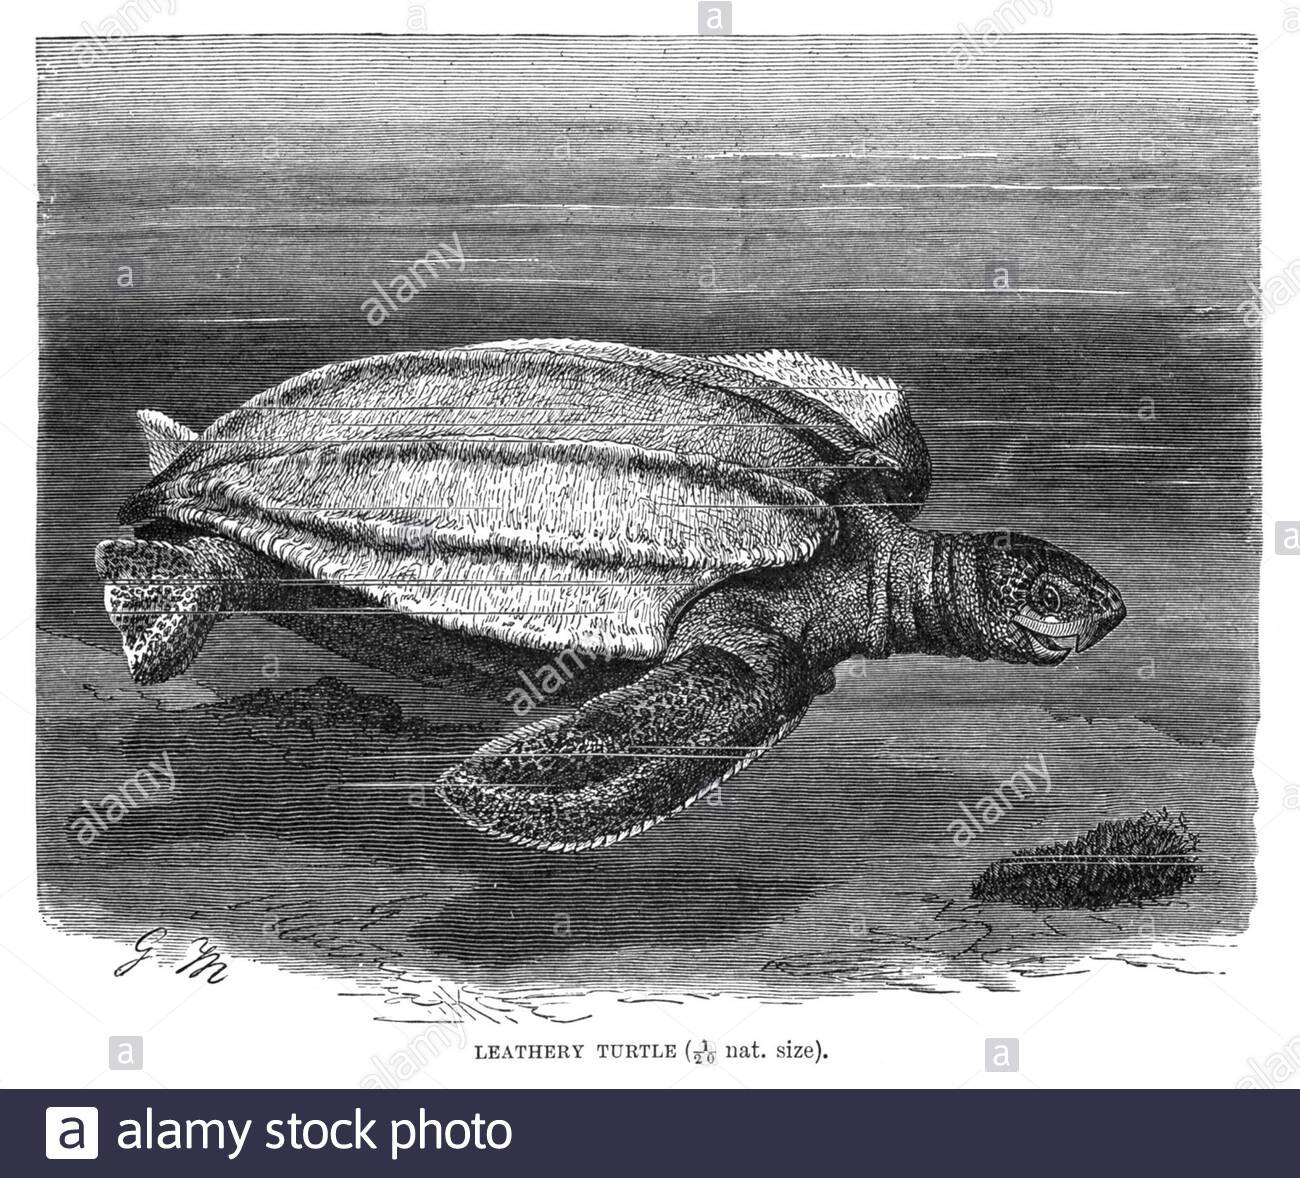 Leathery Turtle (Leatherback sea turtle), vintage illustration from 1896 Stock Photo